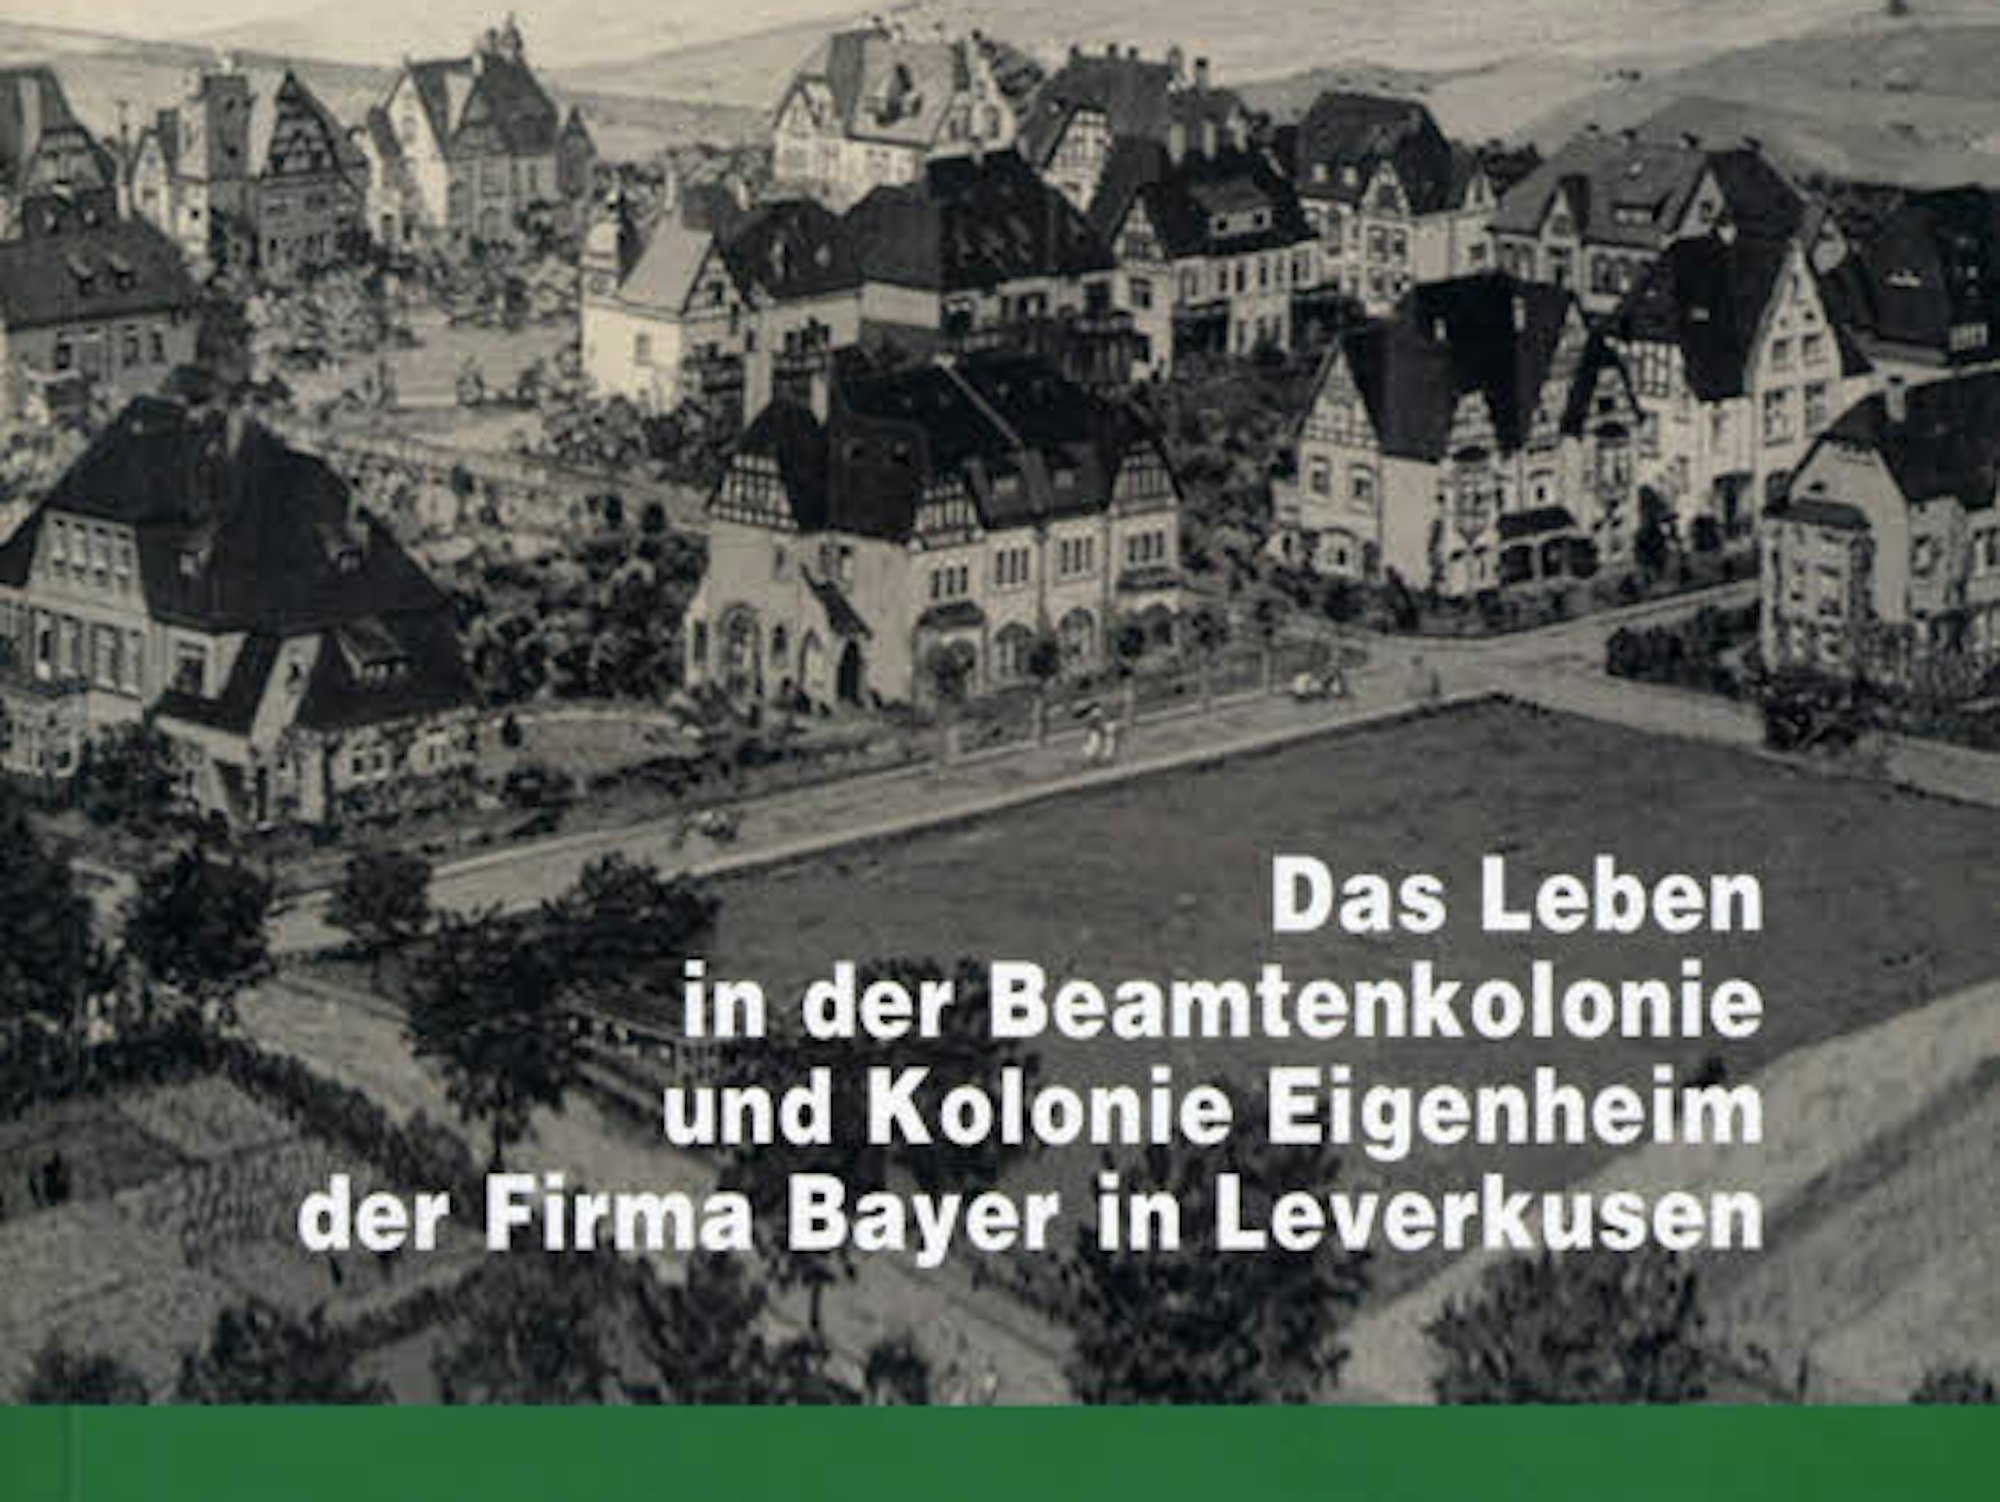 Der Titel der neue Broschüre des Bergischen Geschichtsvereins.